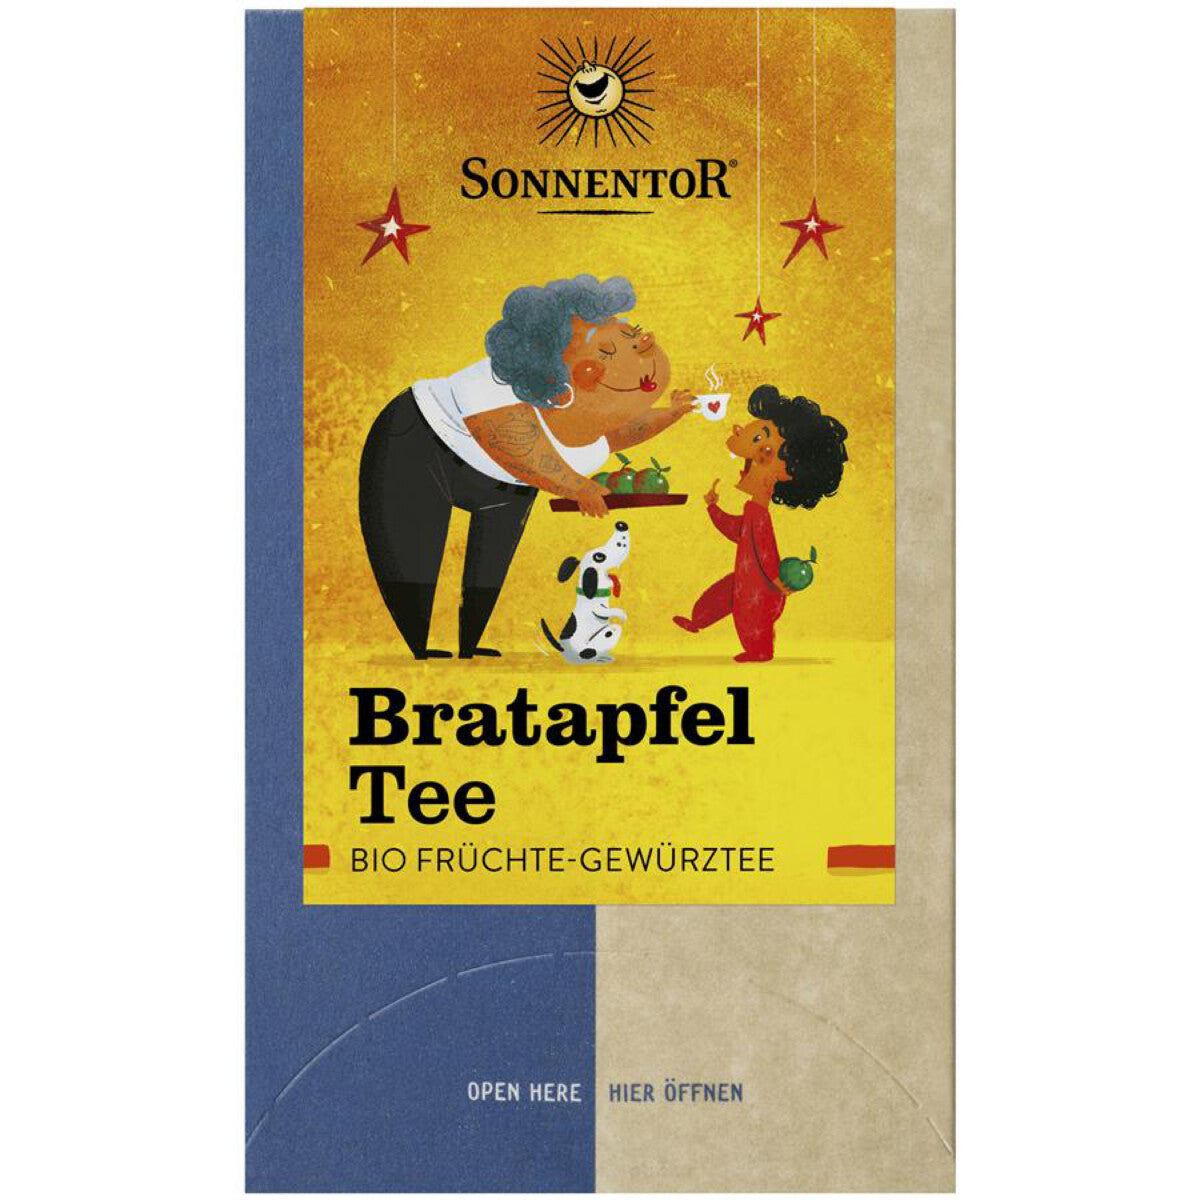 SONNENTOR Bratapfel-Tee - 18 Btl.